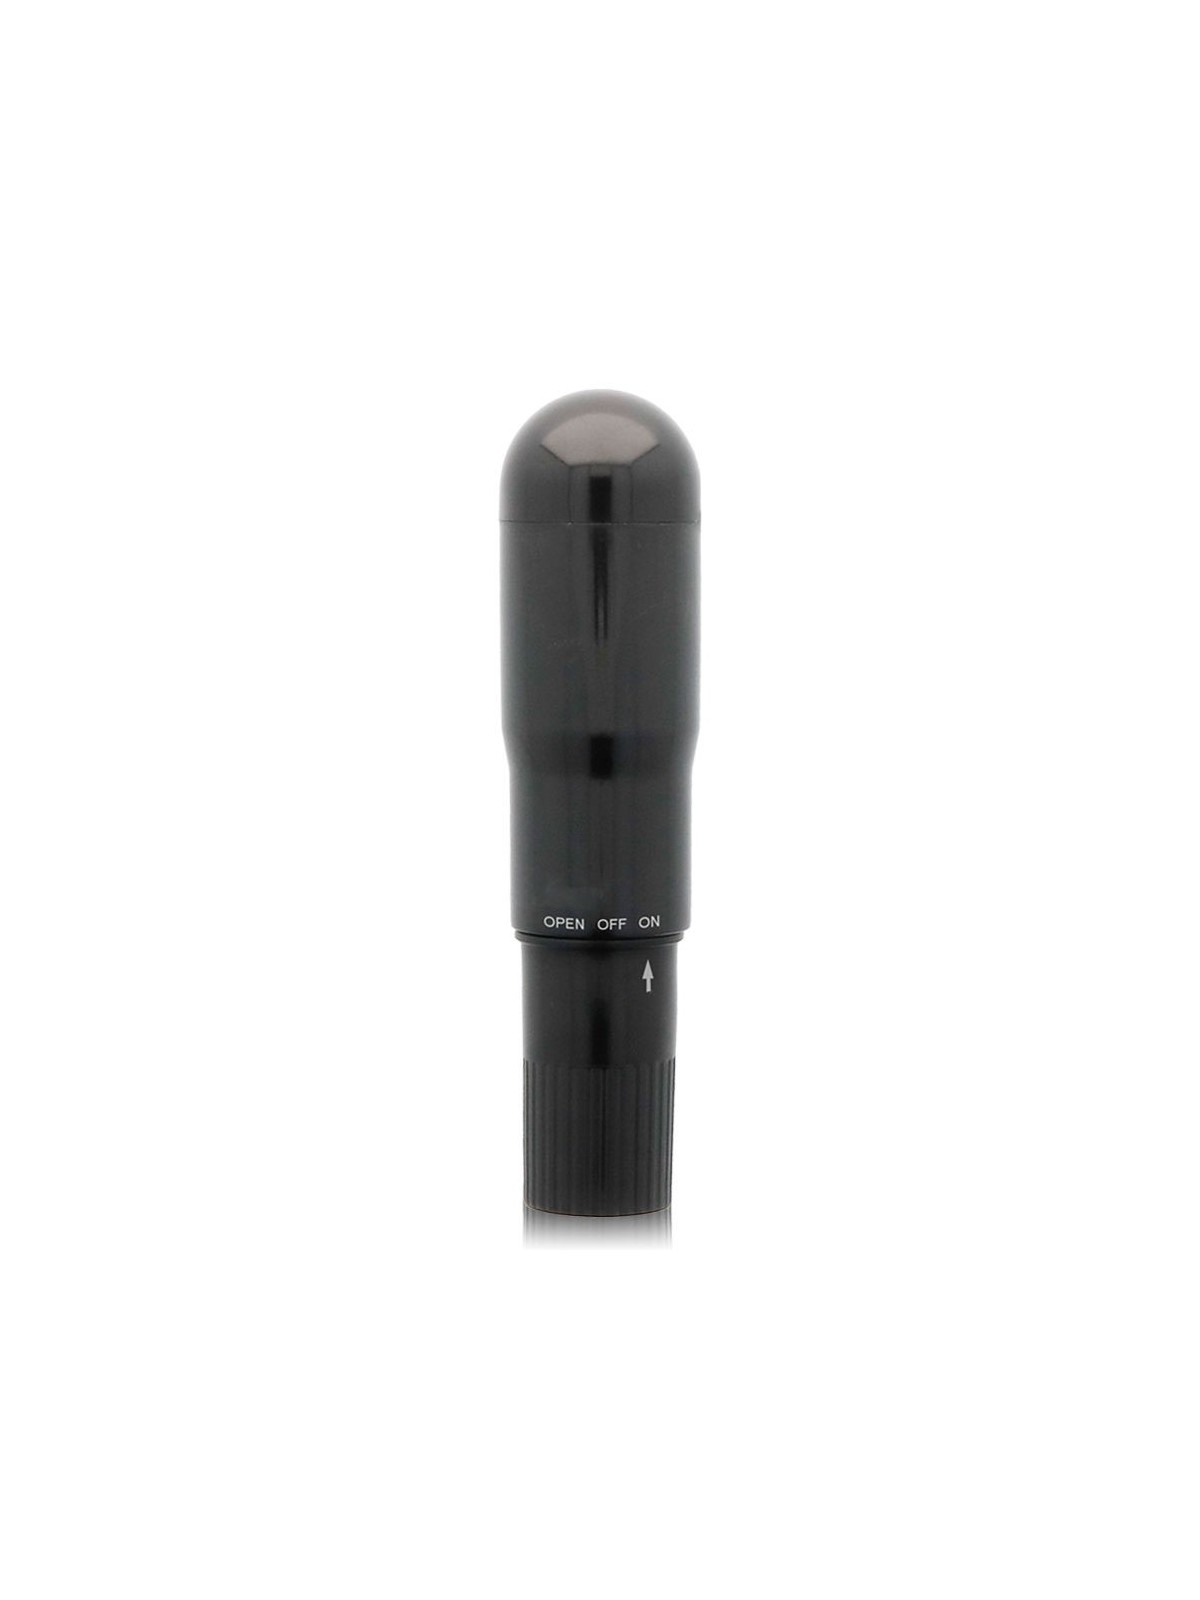 Glossy Pocket Vibrador - Comprar Bala vibradora Glossy - Balas vibradoras (1)